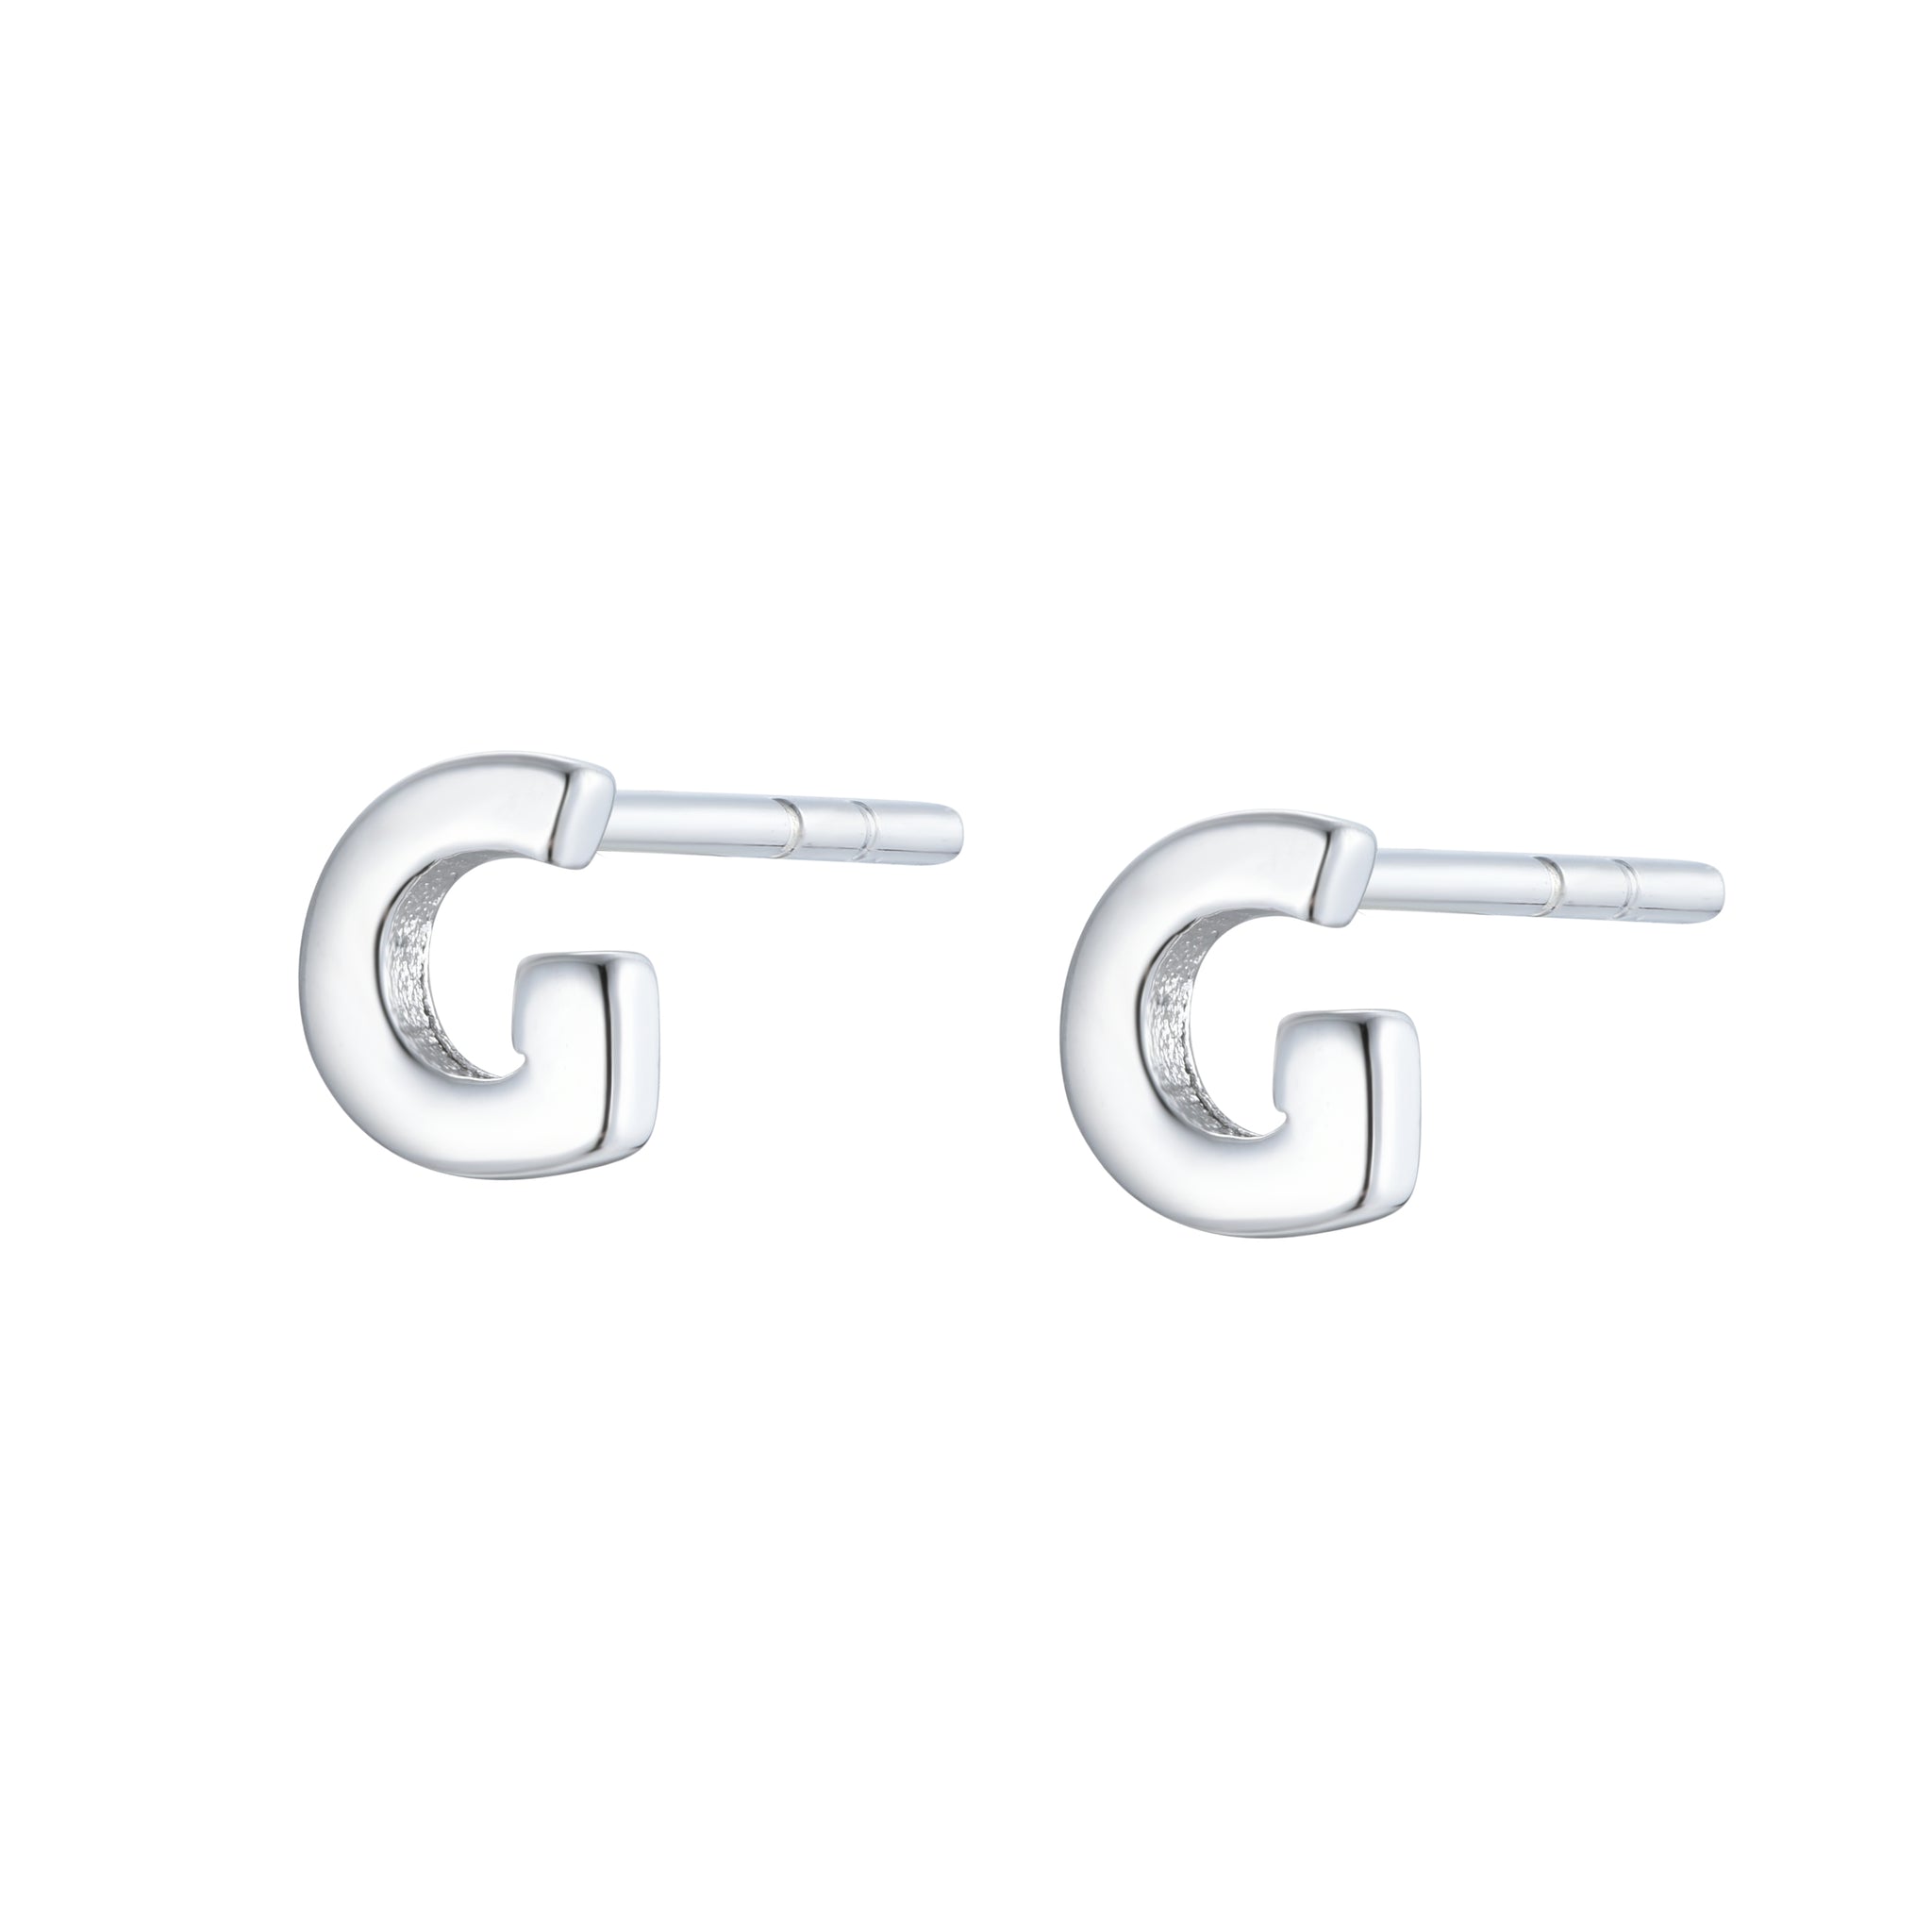 EG-126/S - Initial Earrings (Sold as a single Earring)